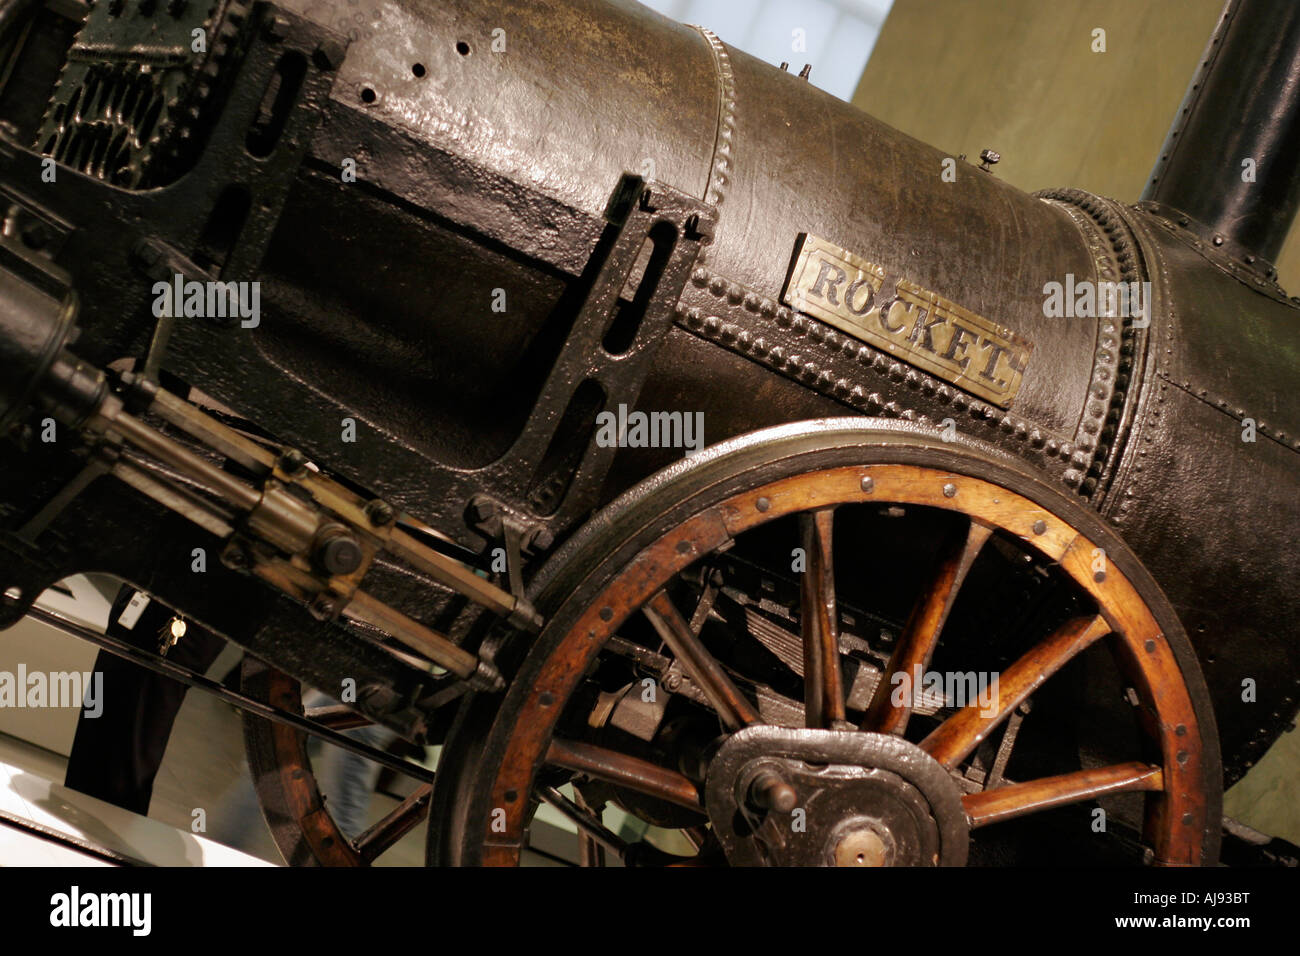 Stephenson's Rocket Locomotive dans le Science Museum de Londres Banque D'Images